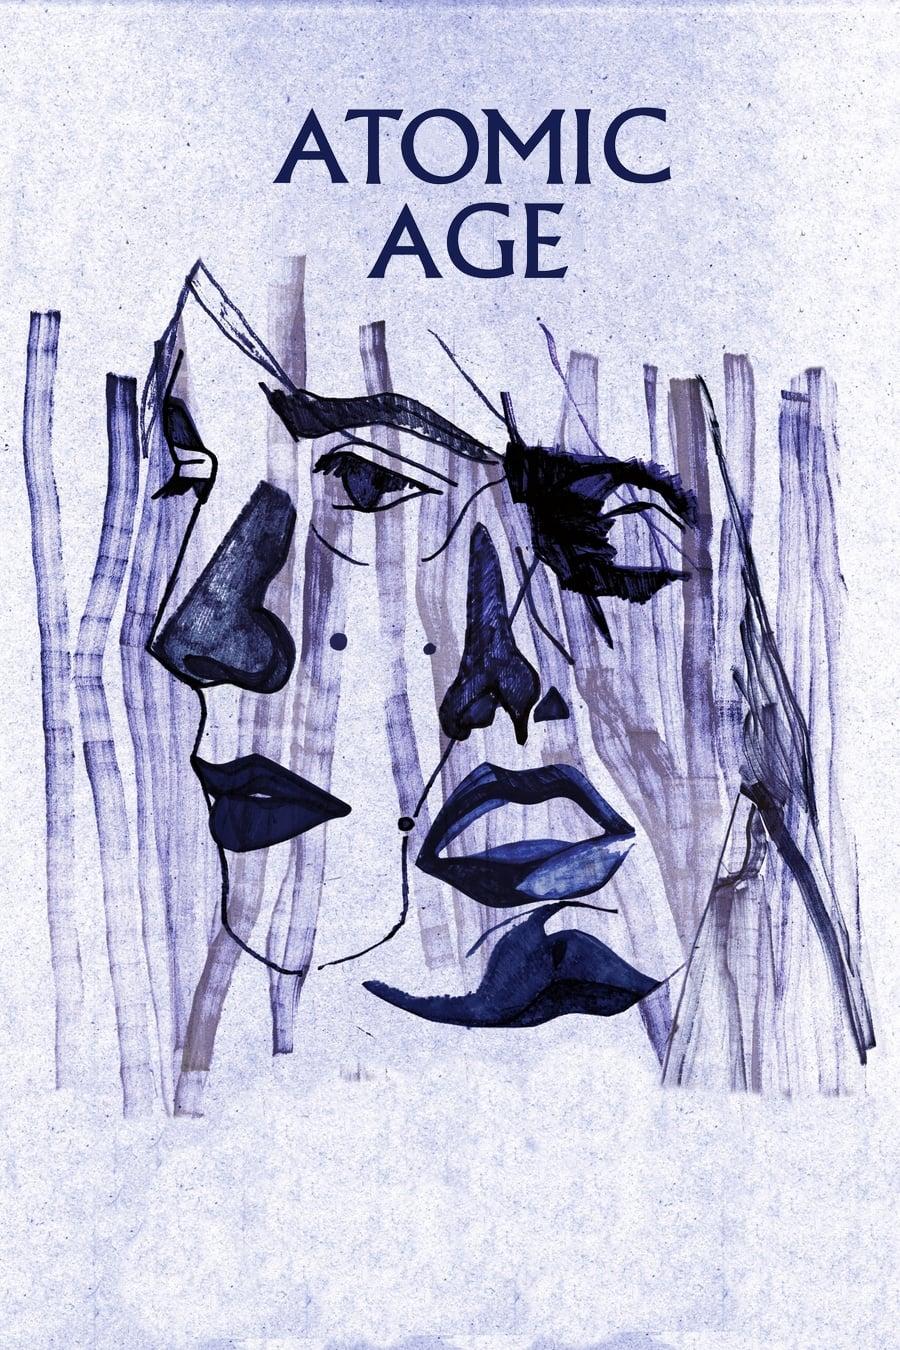 Atomic Age poster